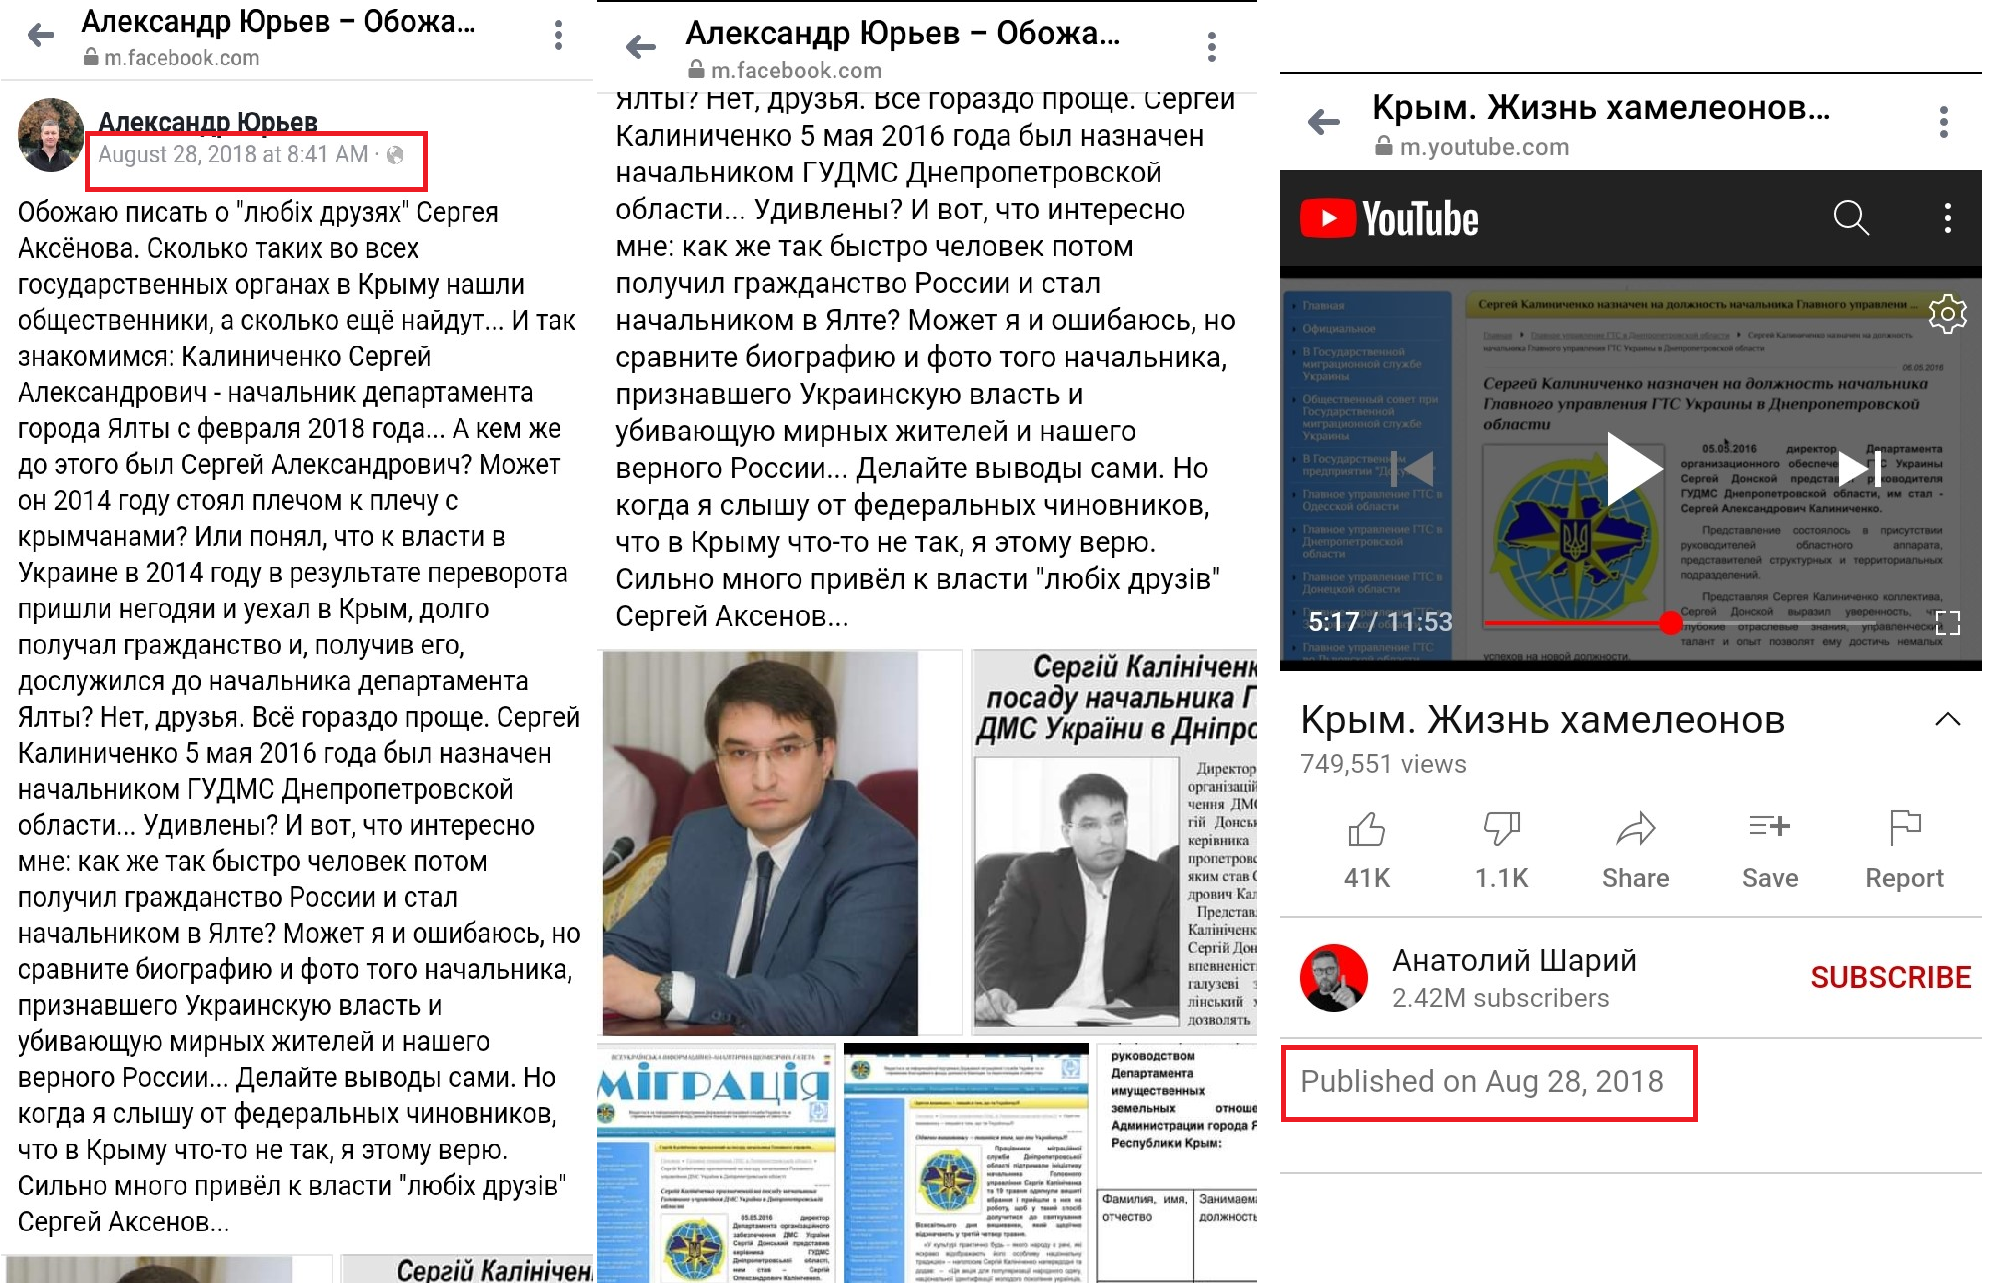 Анатолій Шарій зняв відеоролик за матеріалами, які йому передали ФСБ РФ за посередництвом Олександра Юрьєва